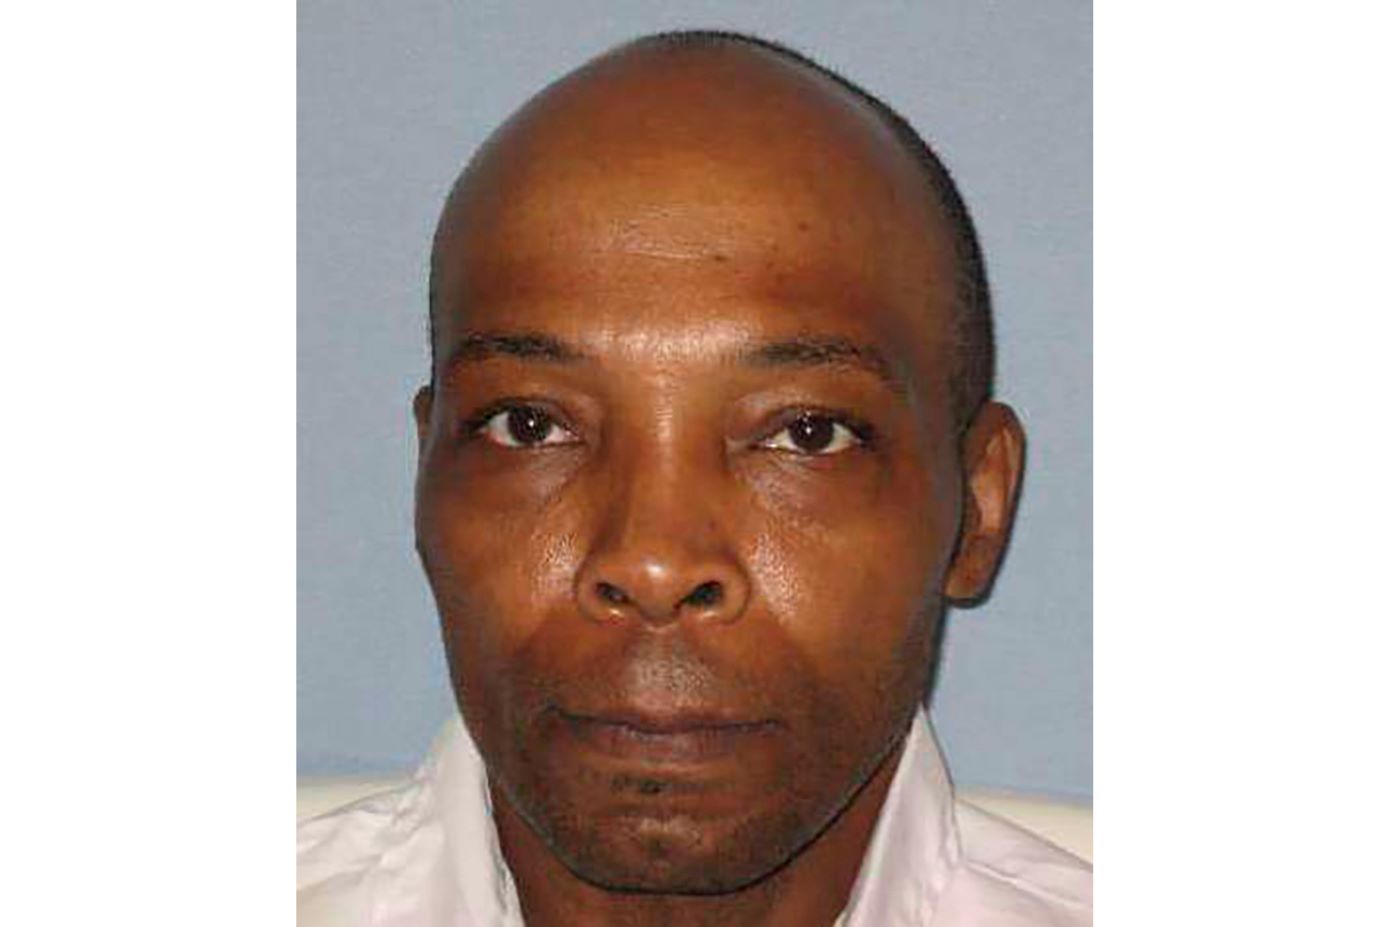 Καταδικασμένος σε θάνατο εκτελέστηκε στην Αλαμπάμα